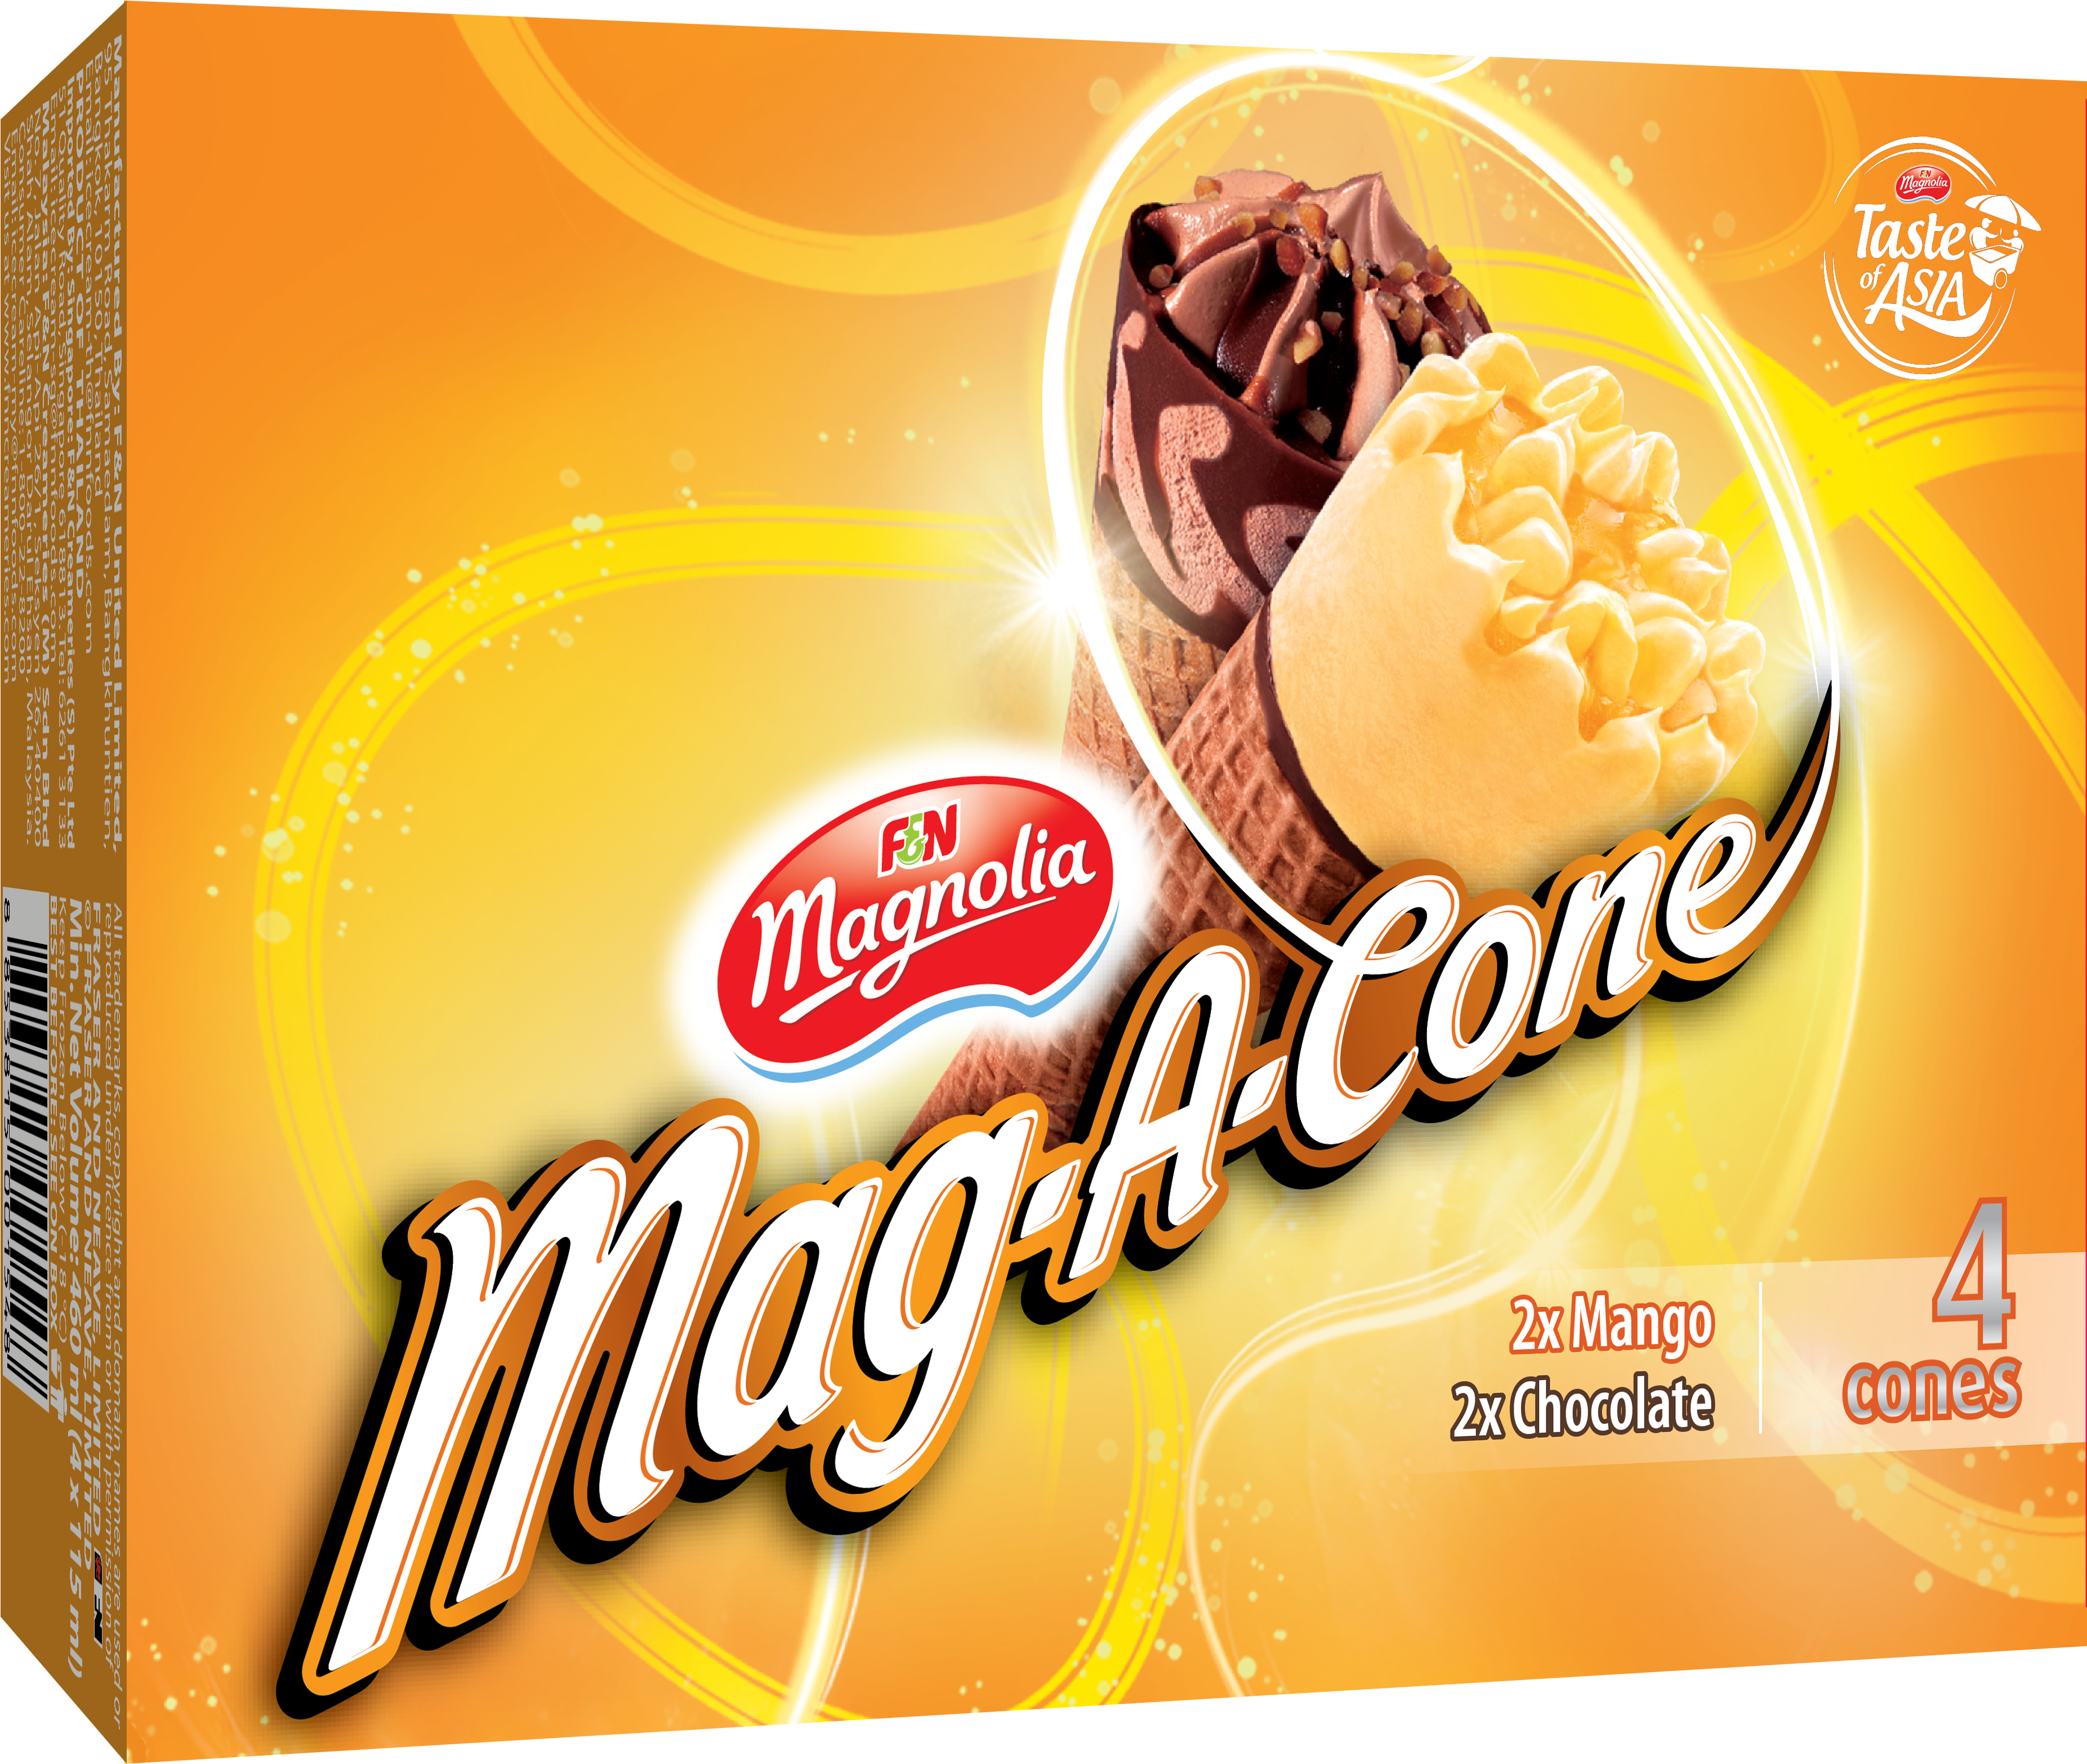 Magnolia Mag A Cone - F&n Magnolia Clipart (4677x6614), Png Download